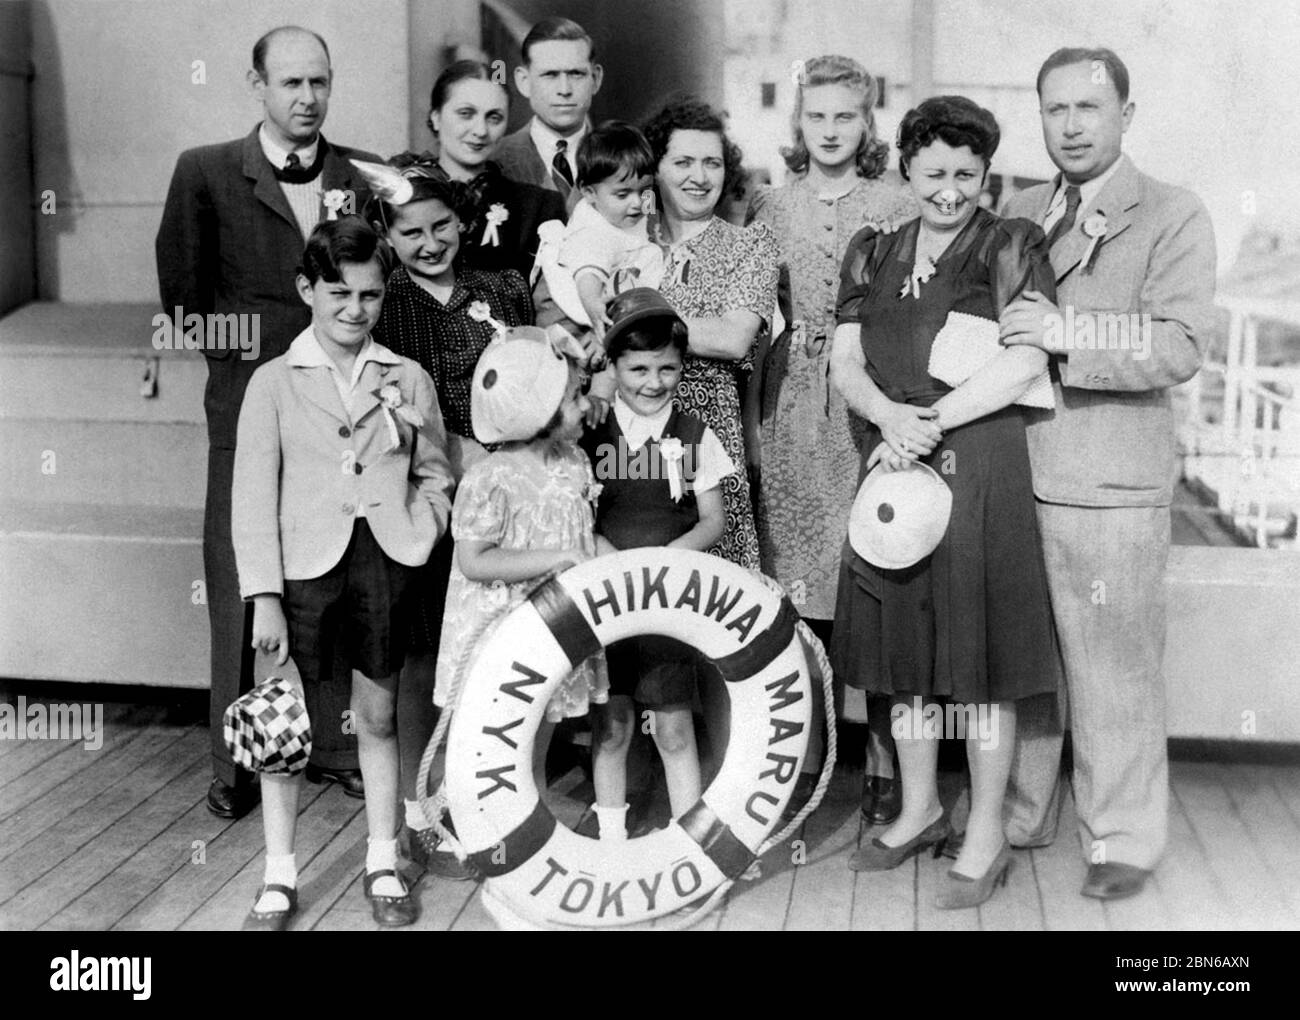 Japon : une famille élargie de réfugiés juifs fuyant la persécution nazie en Europe à bord du paquebot japonais Hikawa Maru (1940). En 1940-41, Banque D'Images